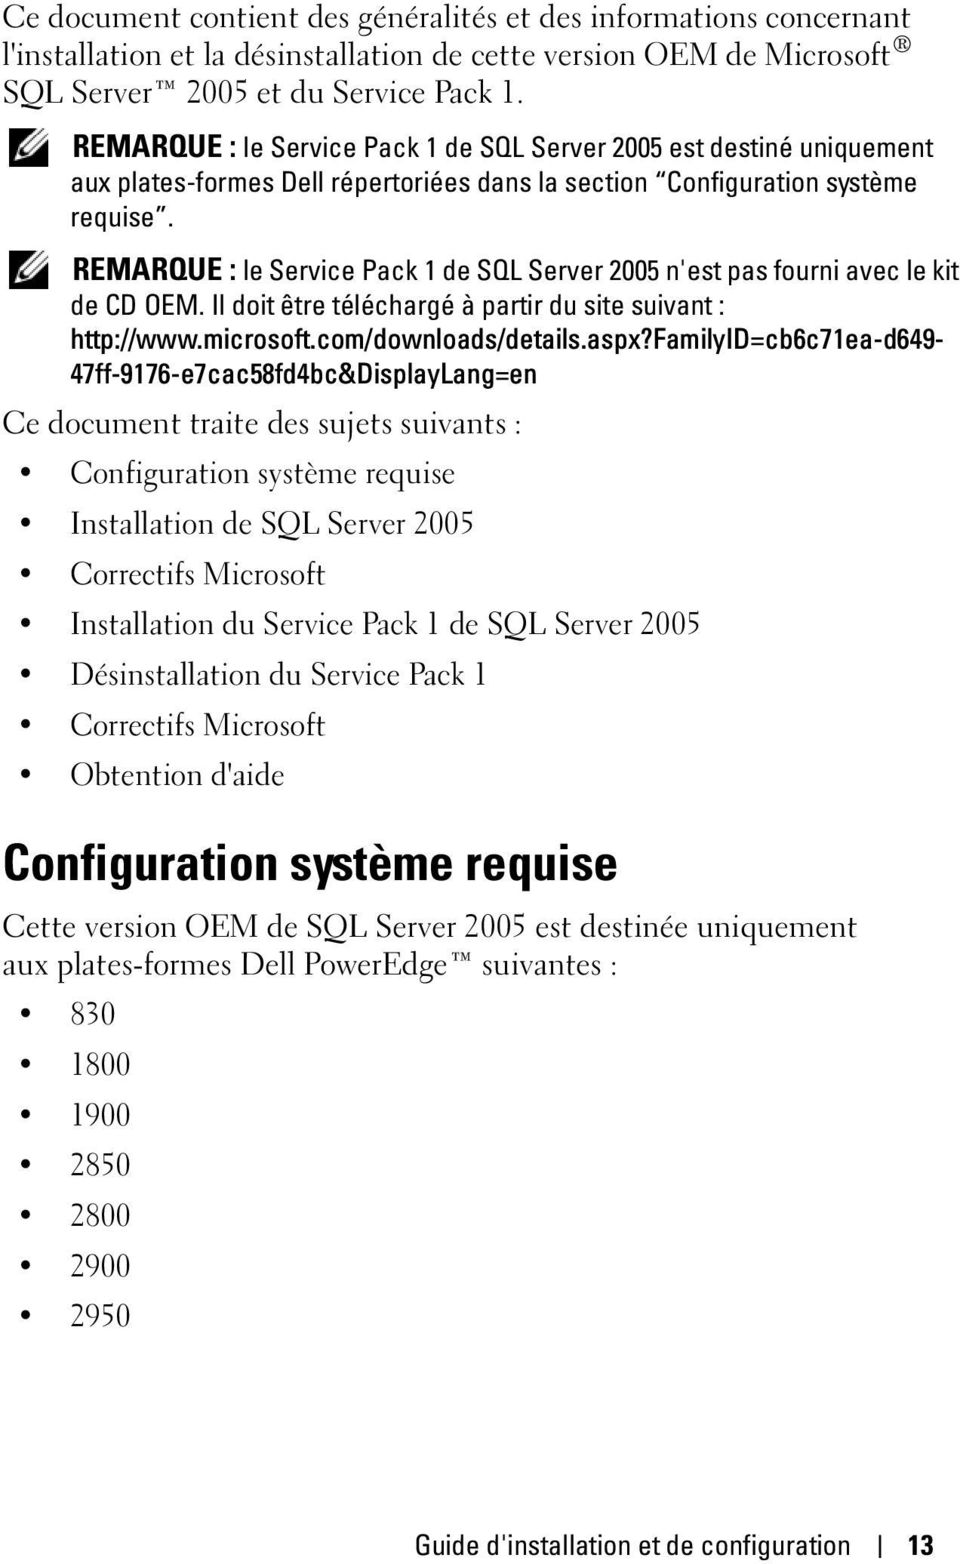 REMARQUE : le Service Pack 1 de SQL Server 2005 n'est pas fourni avec le kit de CD OEM. Il doit être téléchargé à partir du site suivant : http://www.microsoft.com/downloads/details.aspx?